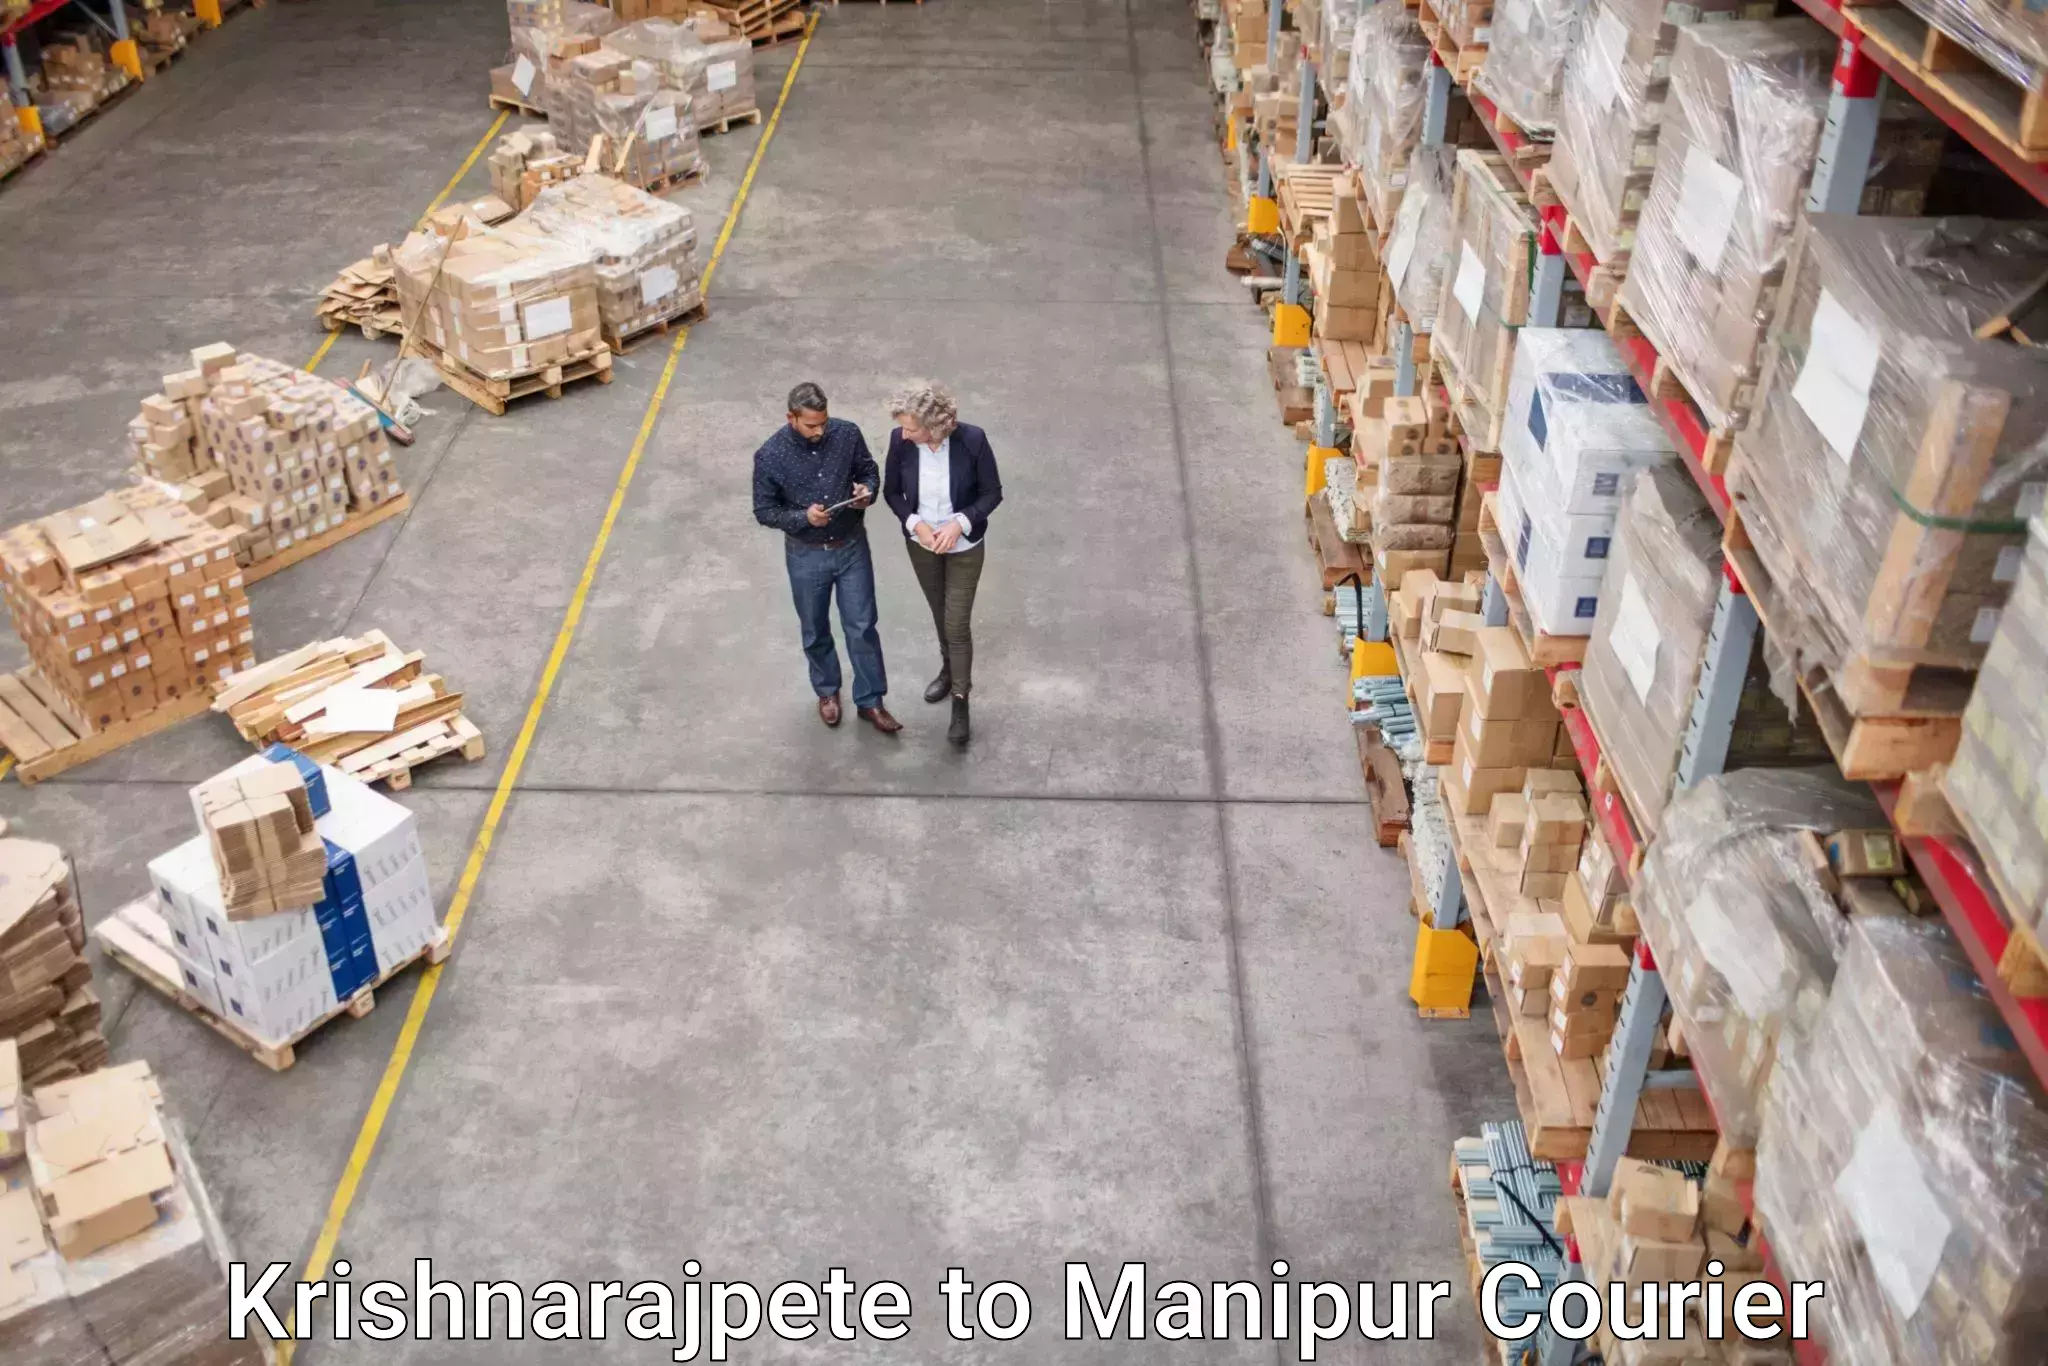 Next-generation courier services Krishnarajpete to Manipur